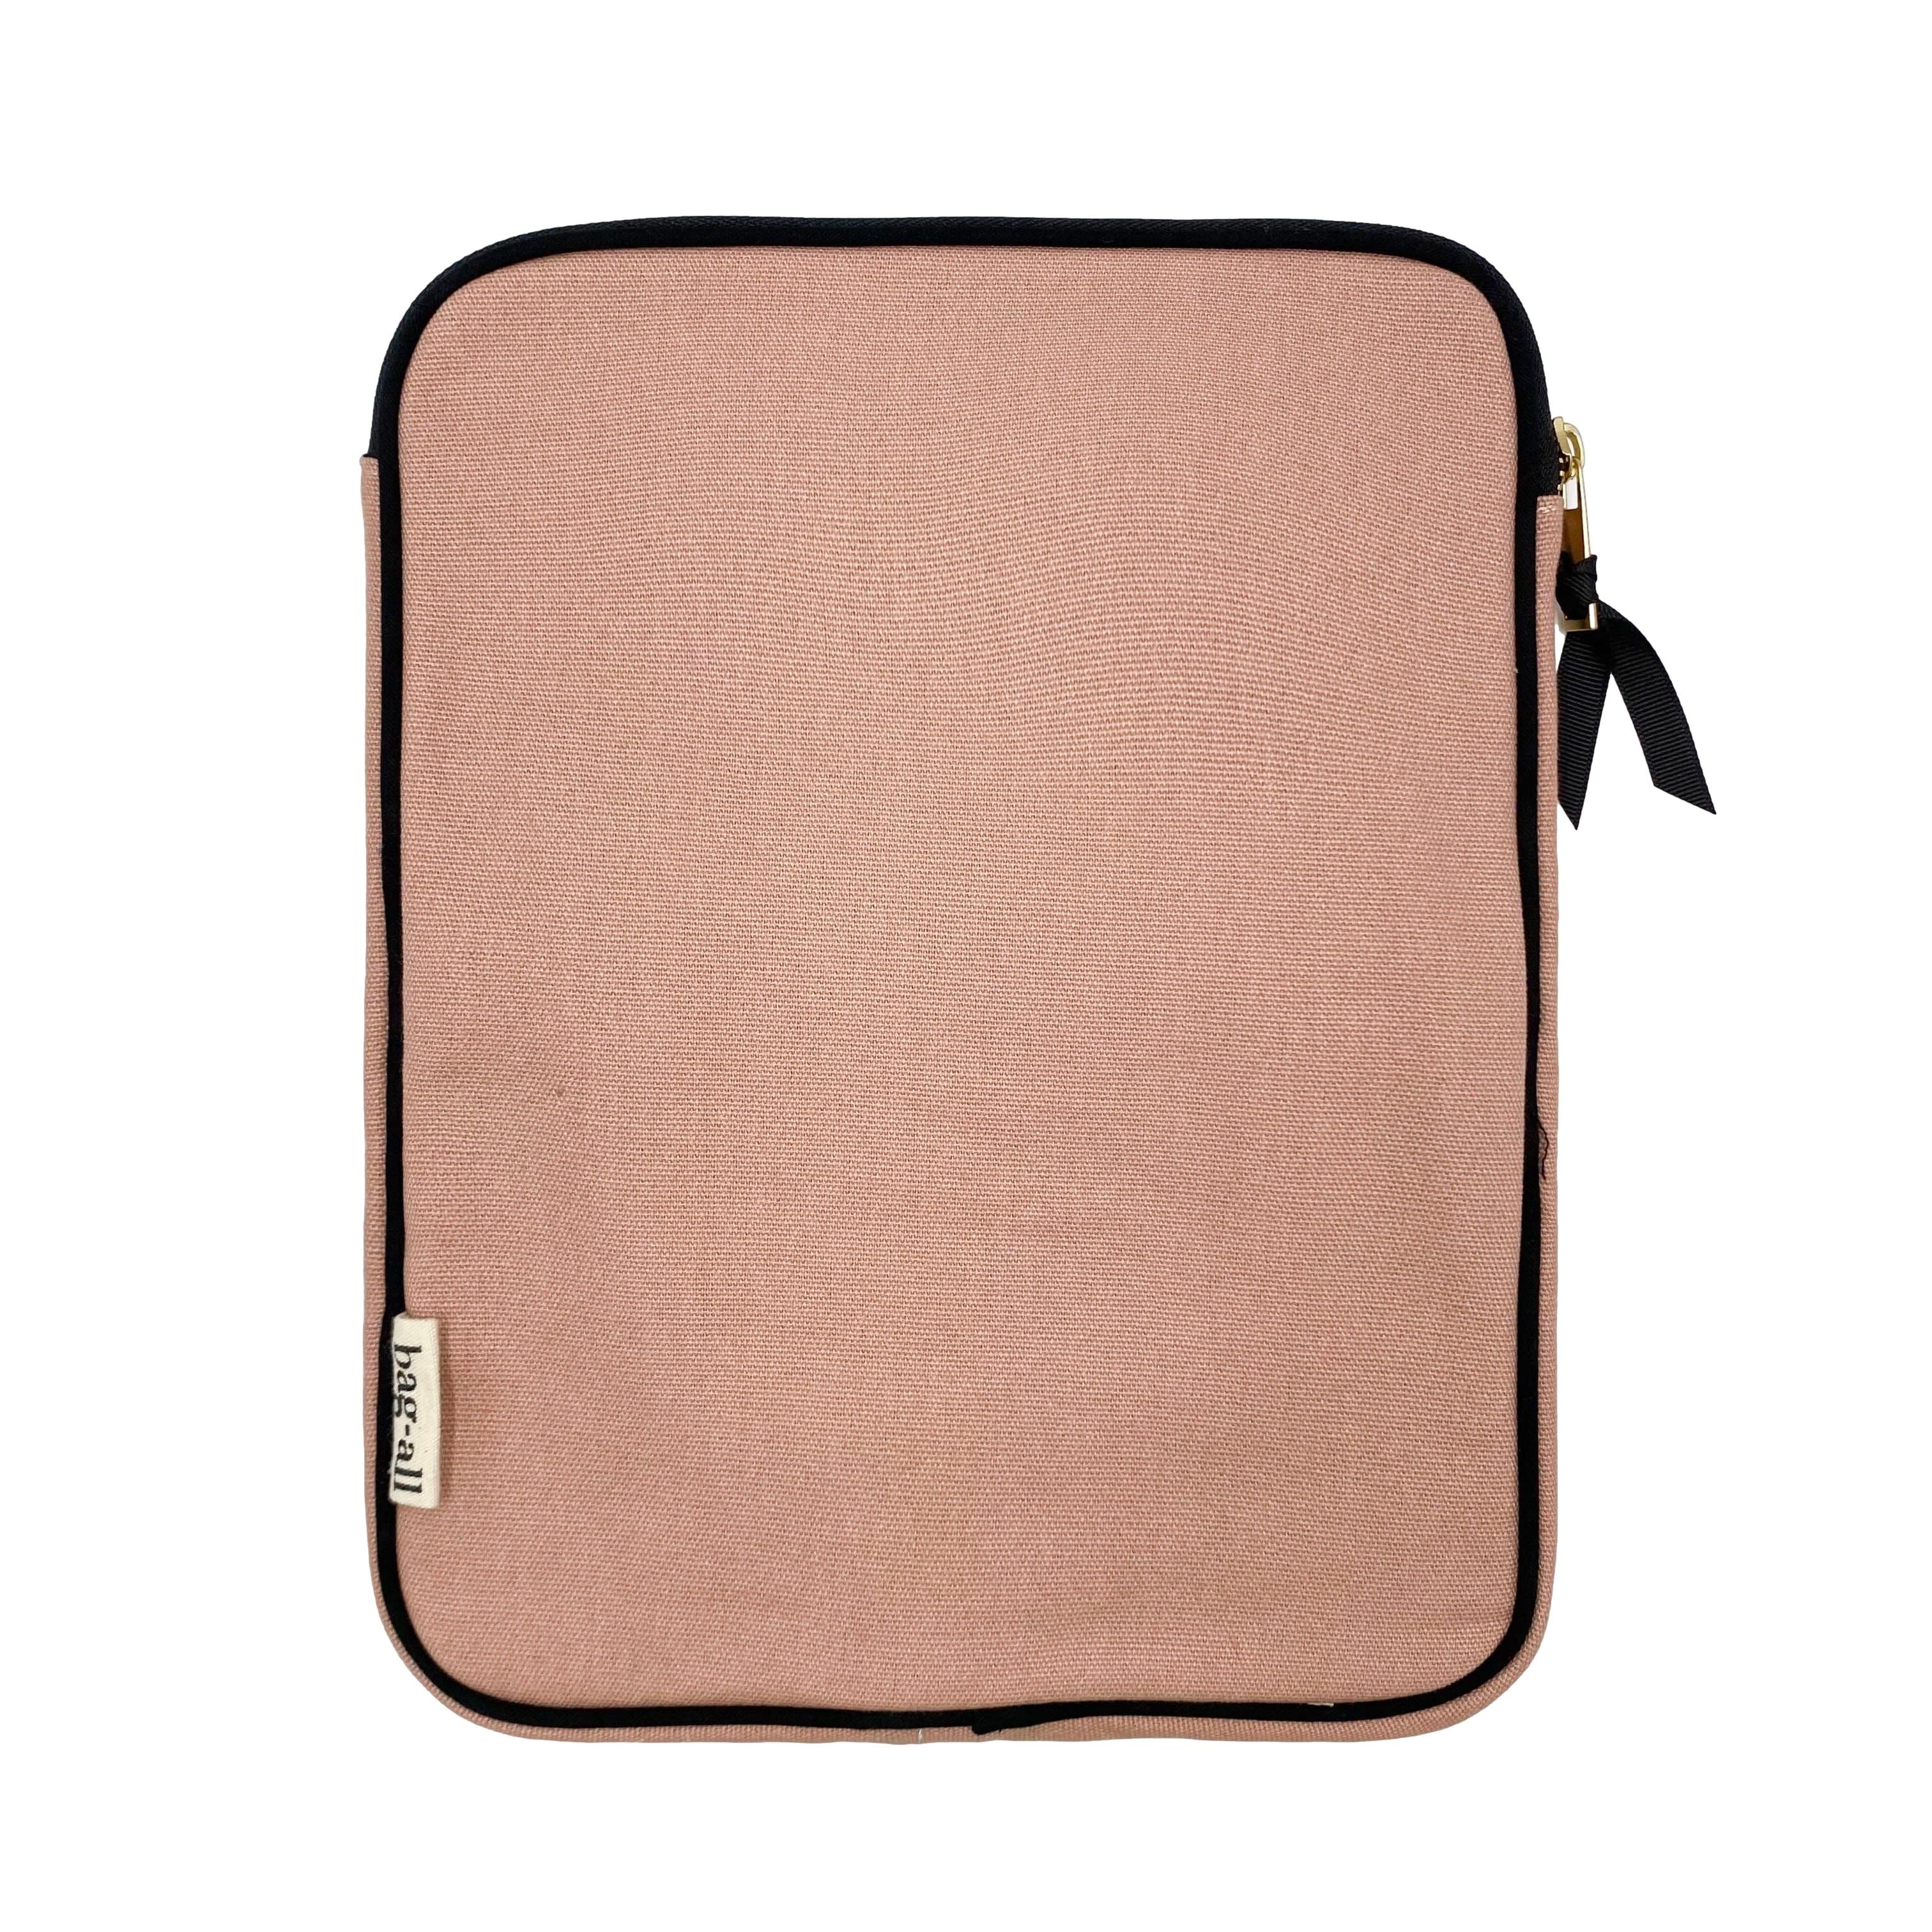 Tablet Case 11", Charger Pocket, Pink/Blush | Bag-all